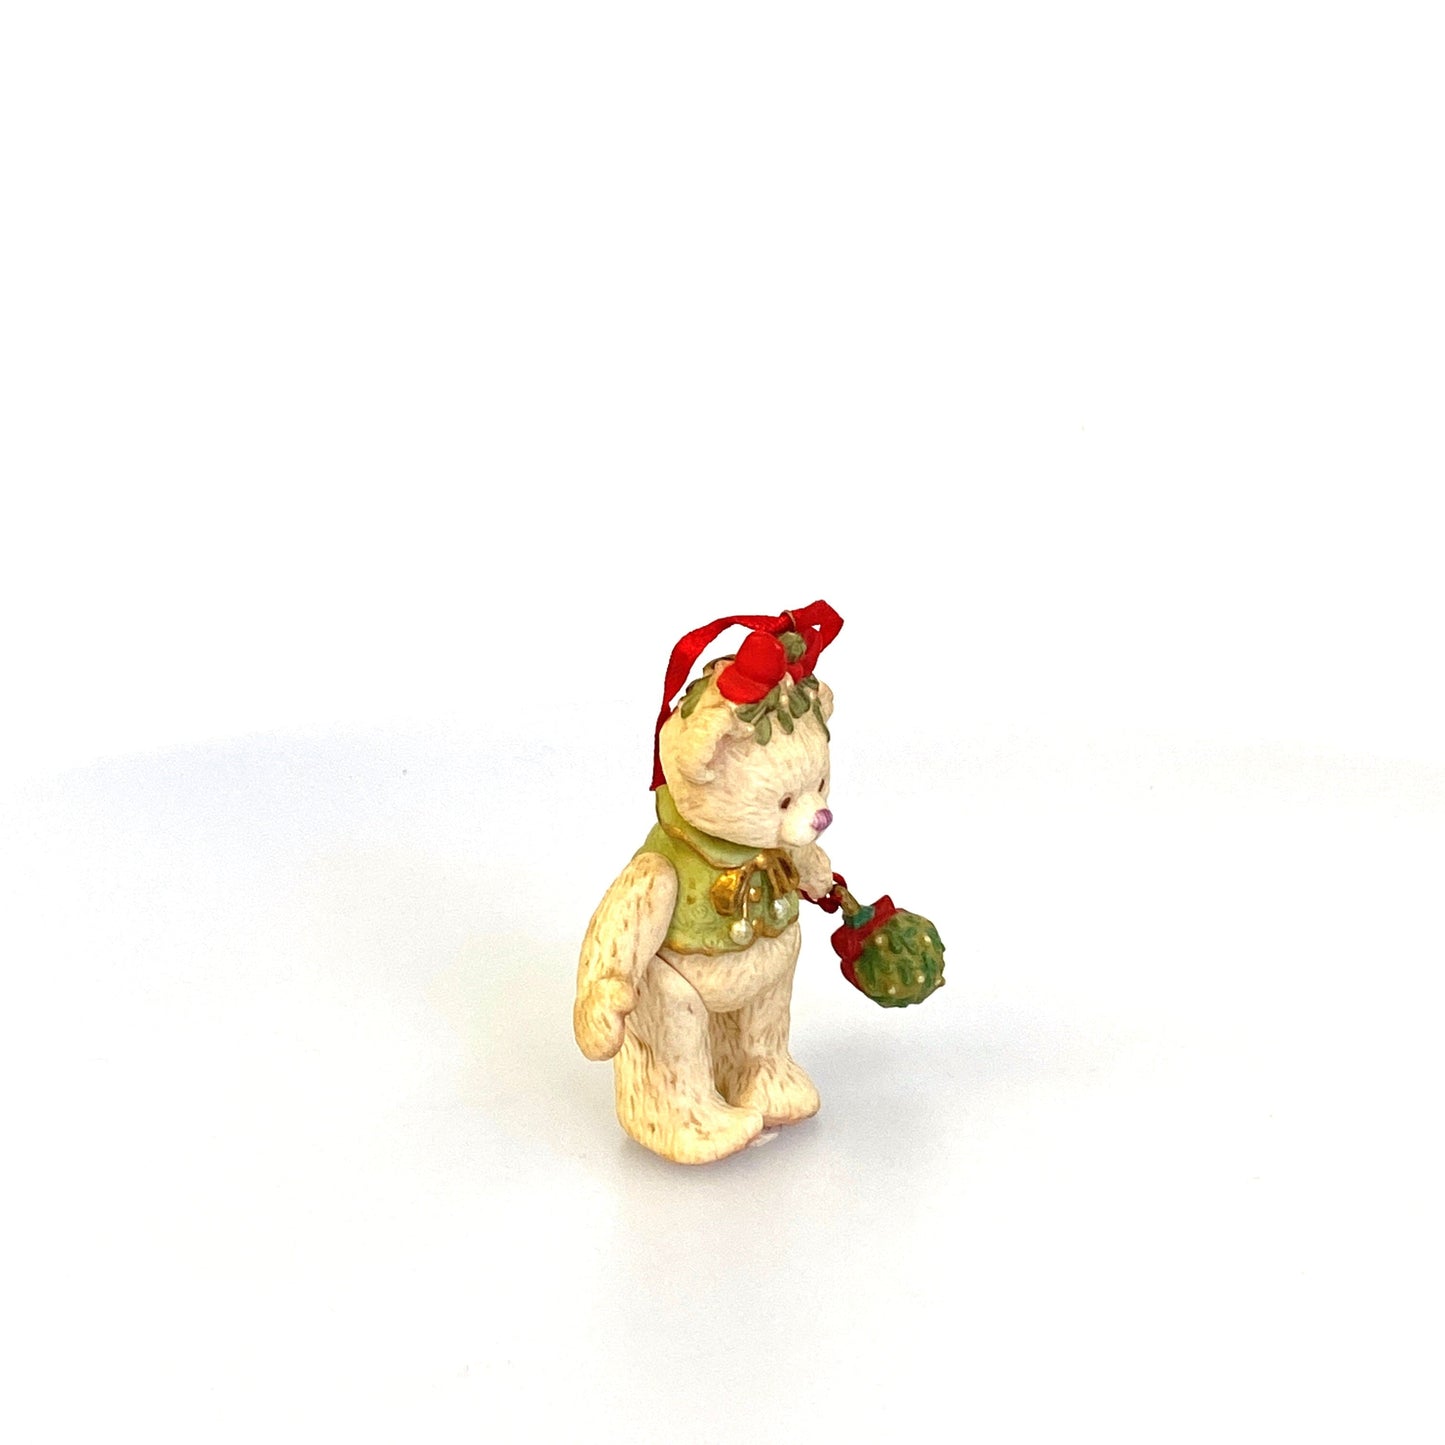 Hallmark Keepsake Ornament “Gift Bearers” Figurine Christmas Tree 2000